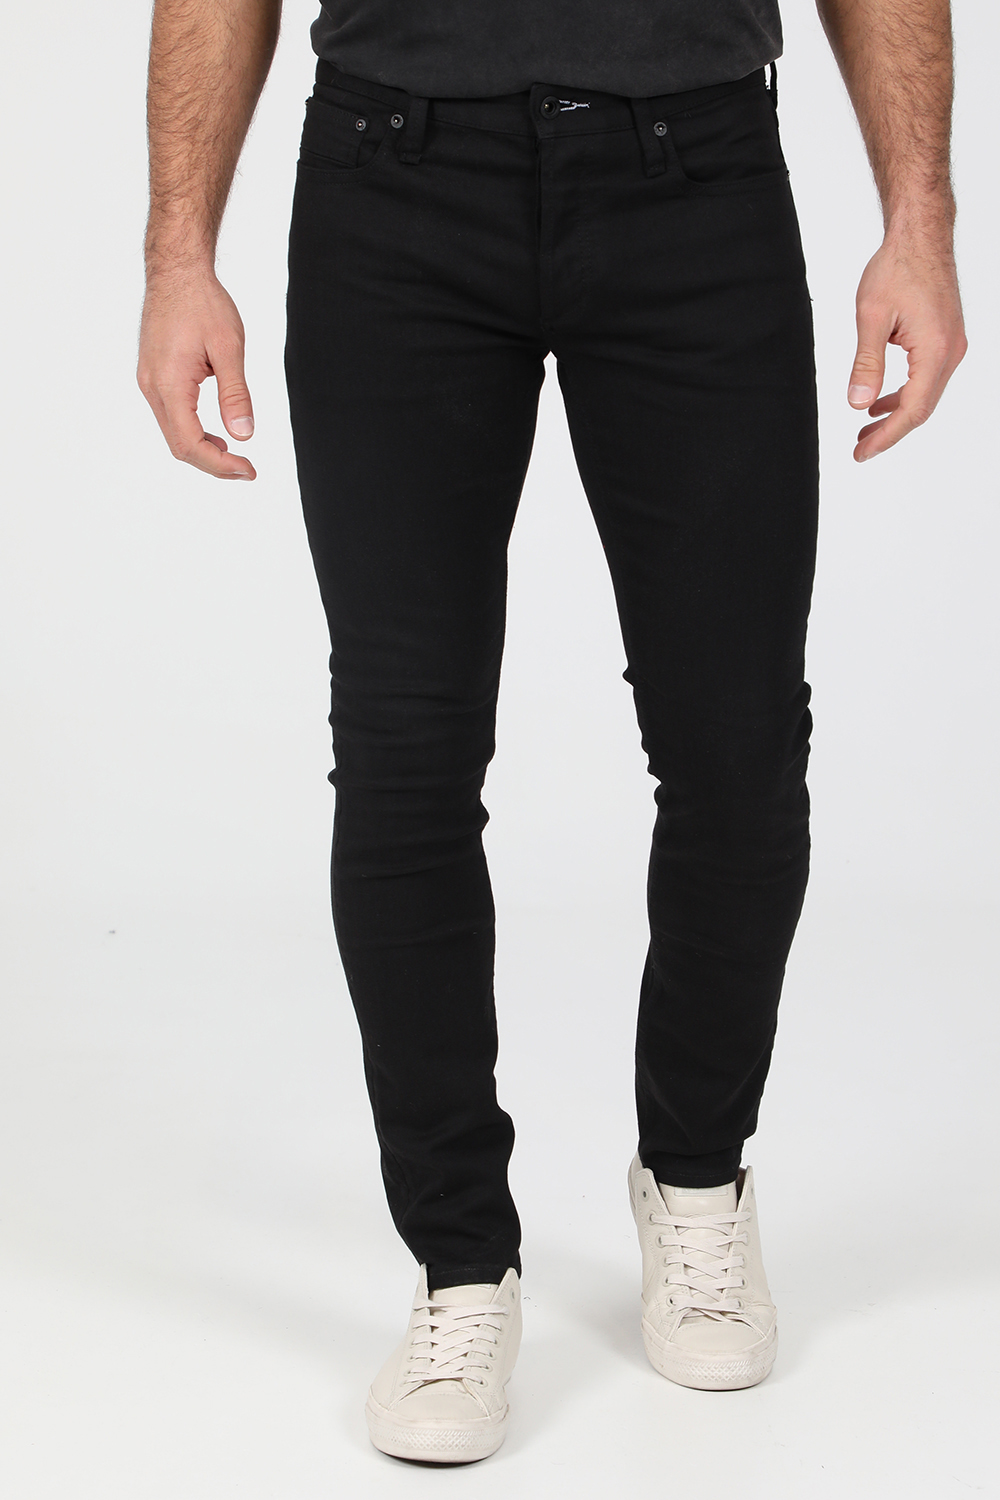 DENHAM – Ανδρικό jean παντελόνι DENHAM BOLT μαύρο 1823098.0-0101